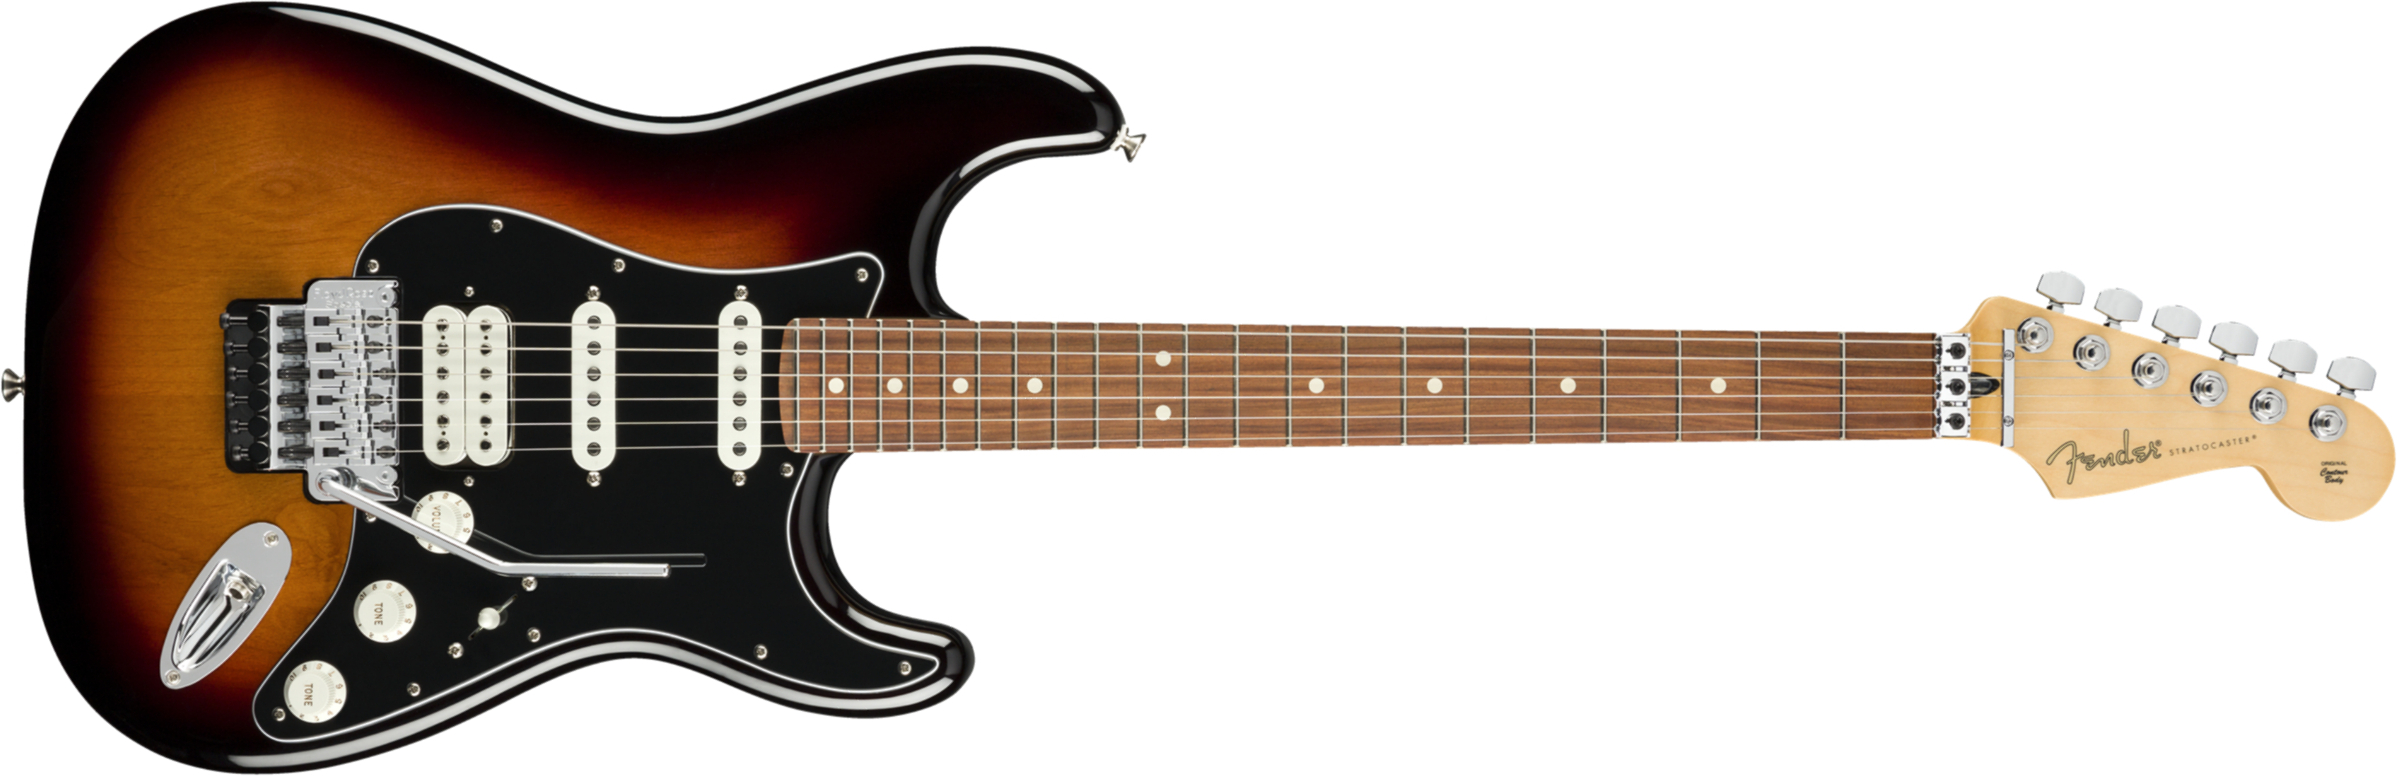 Fender Strat Player Floyd Rose Mex Hss Fr Pf - 3-color Sunburst - Guitare Électrique Forme Str - Main picture